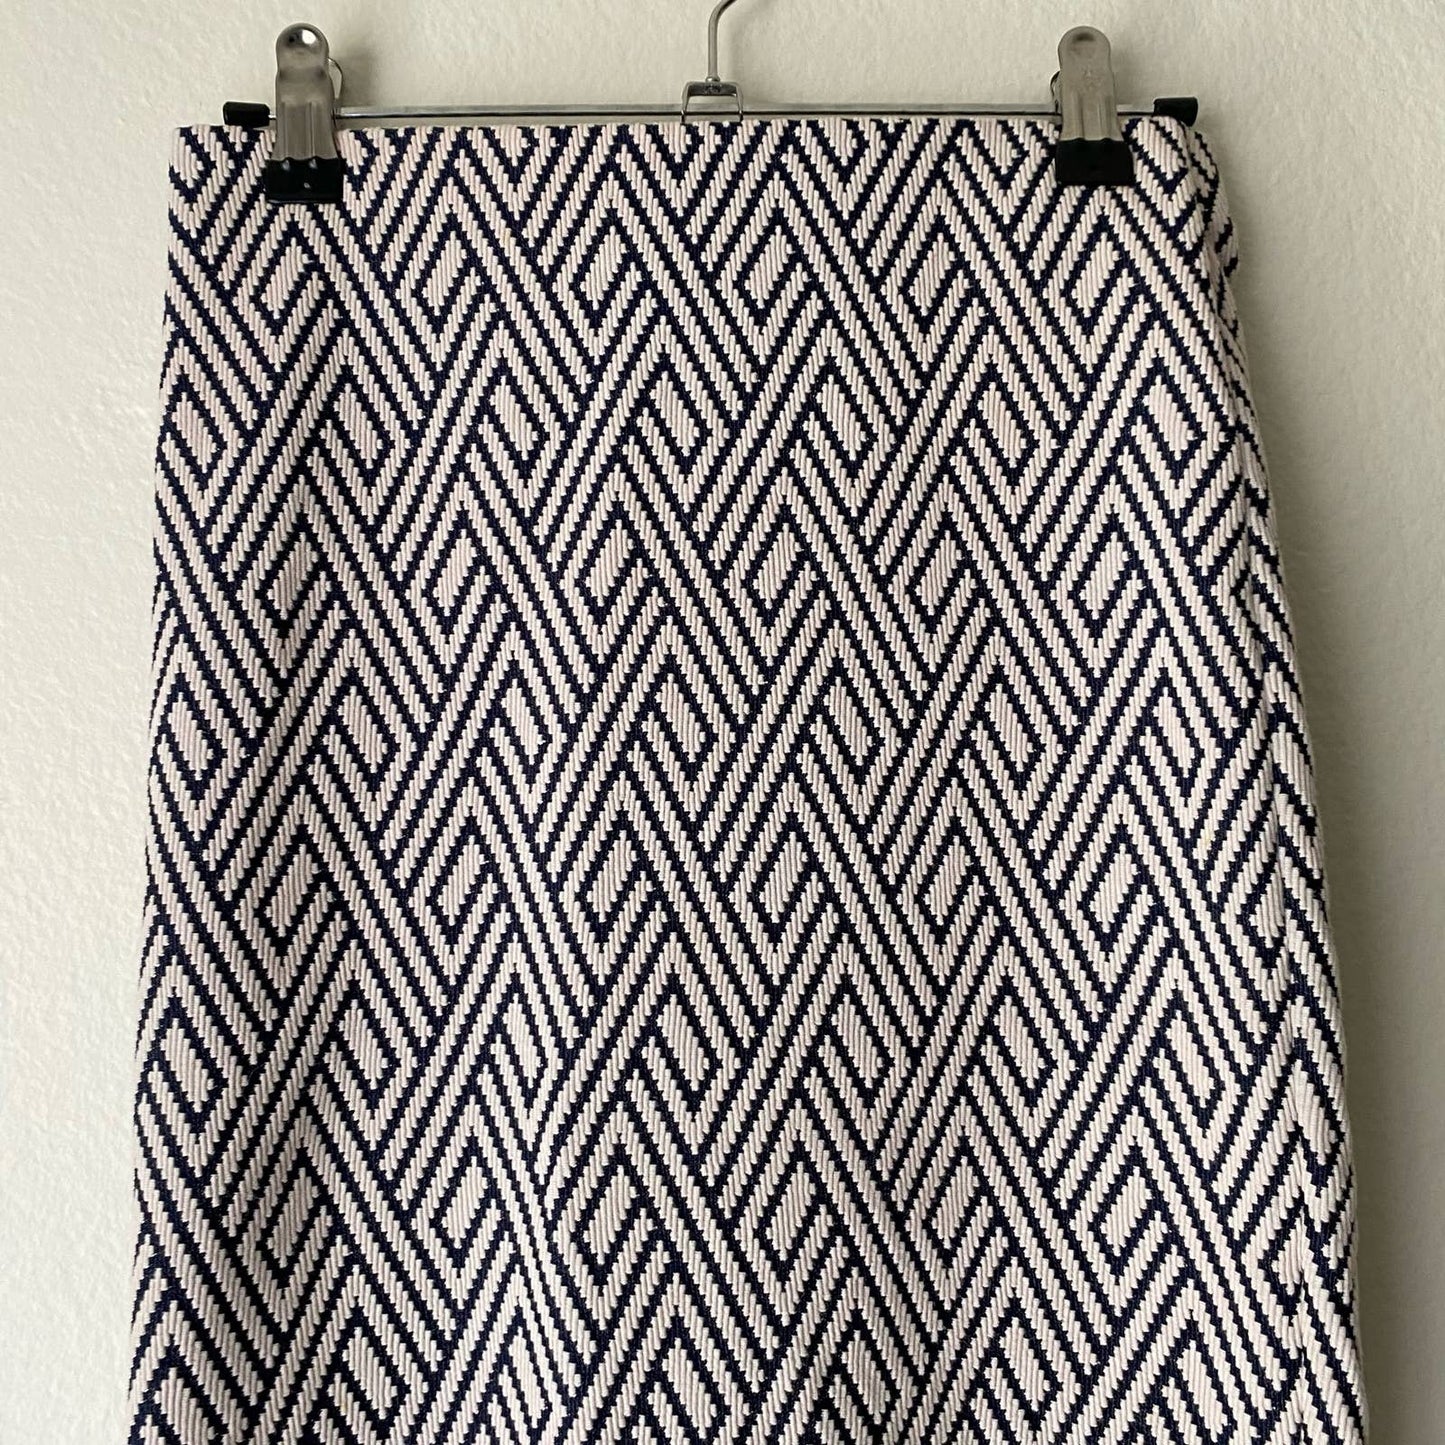 Zara sz S geo diamond print stretch pencil skirt NWOT